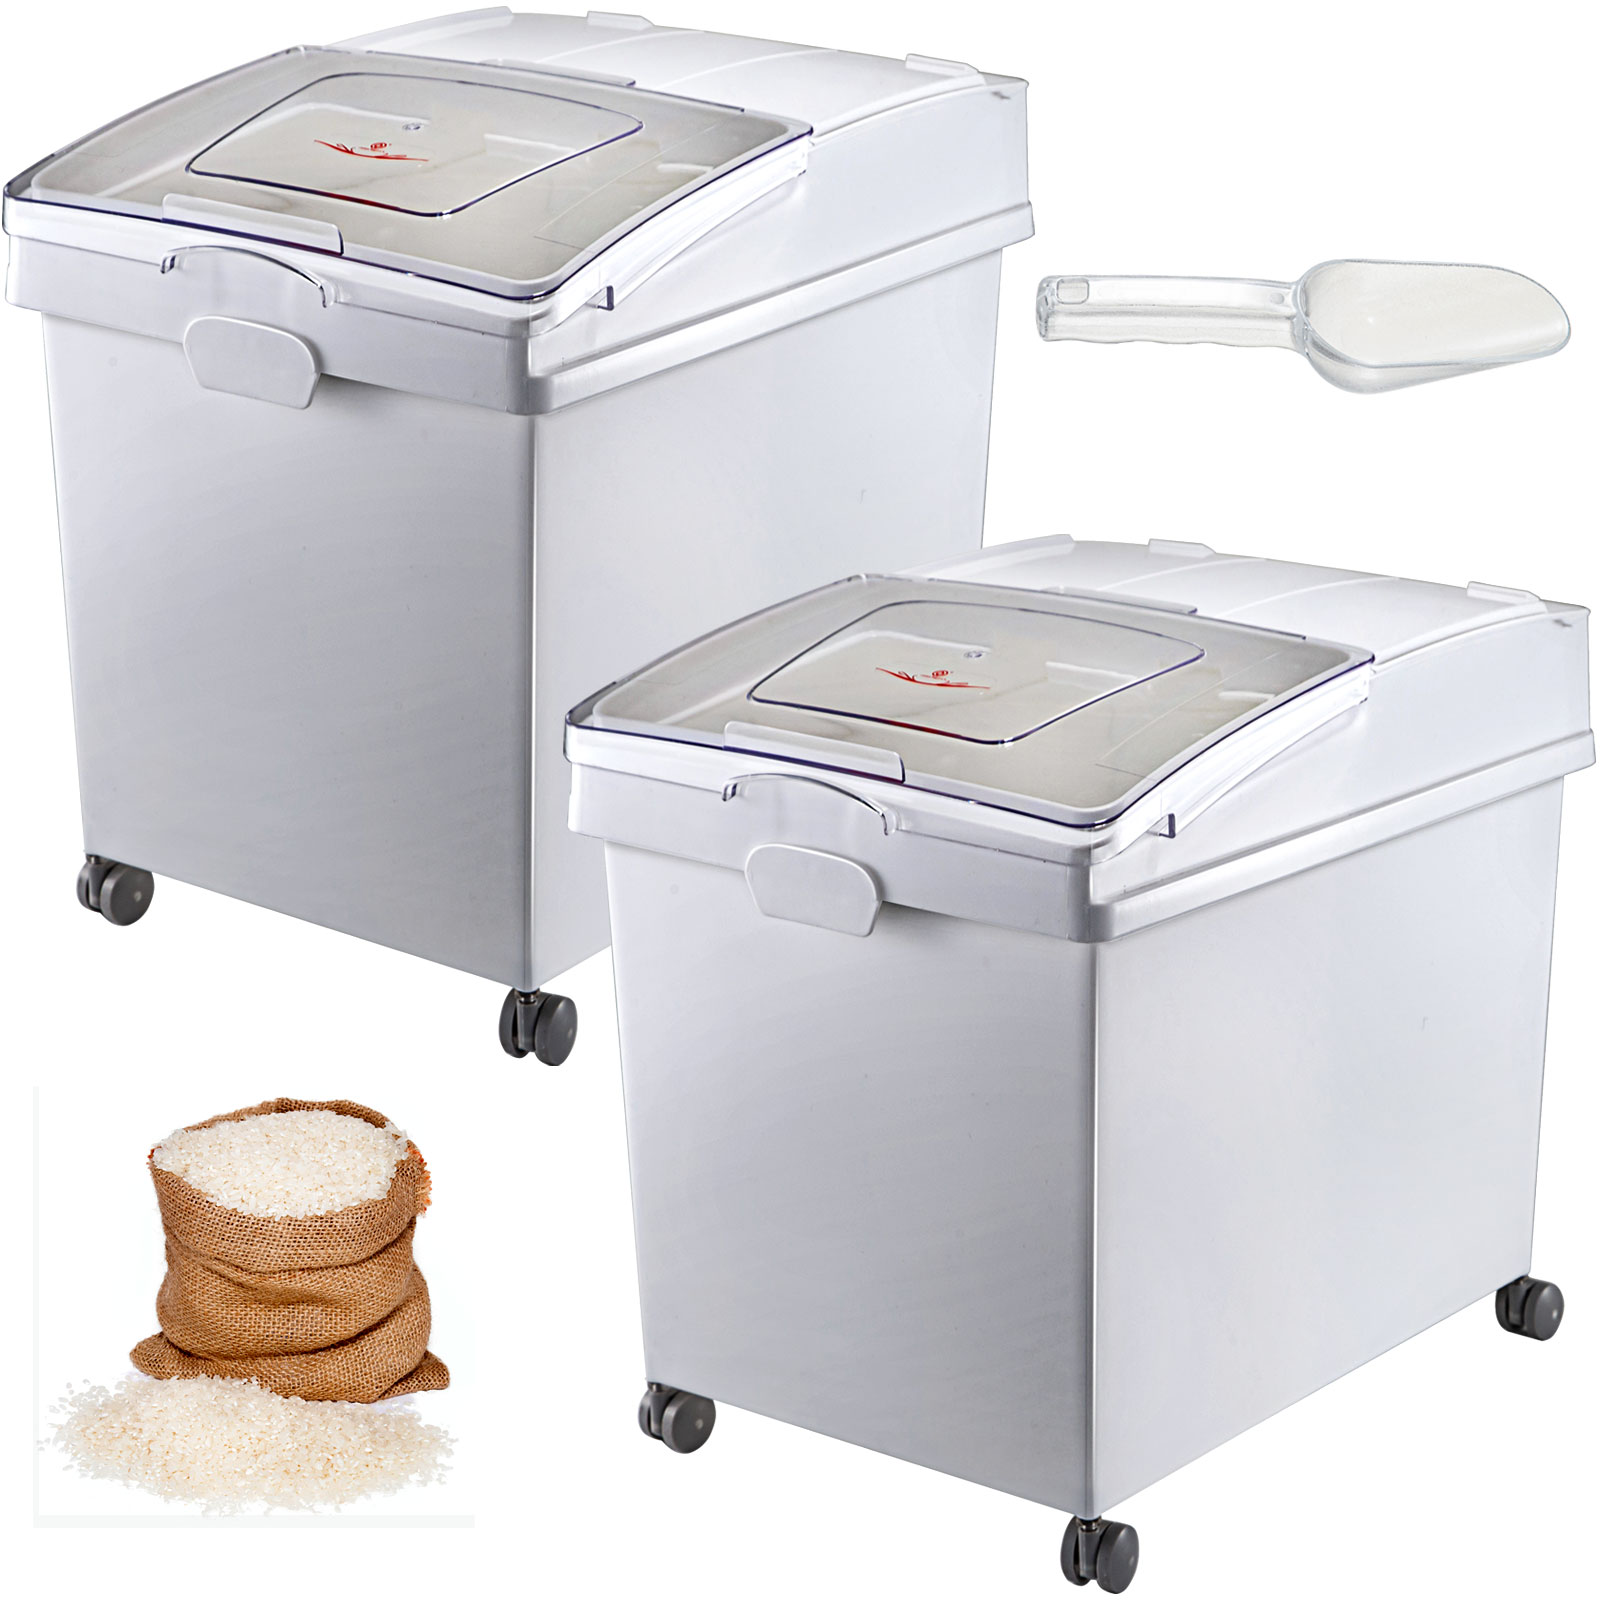 Zutatenbehälter mit Deckel Vorratsbehälter Küche Lagerbehälter Mehlwagen 102 l 